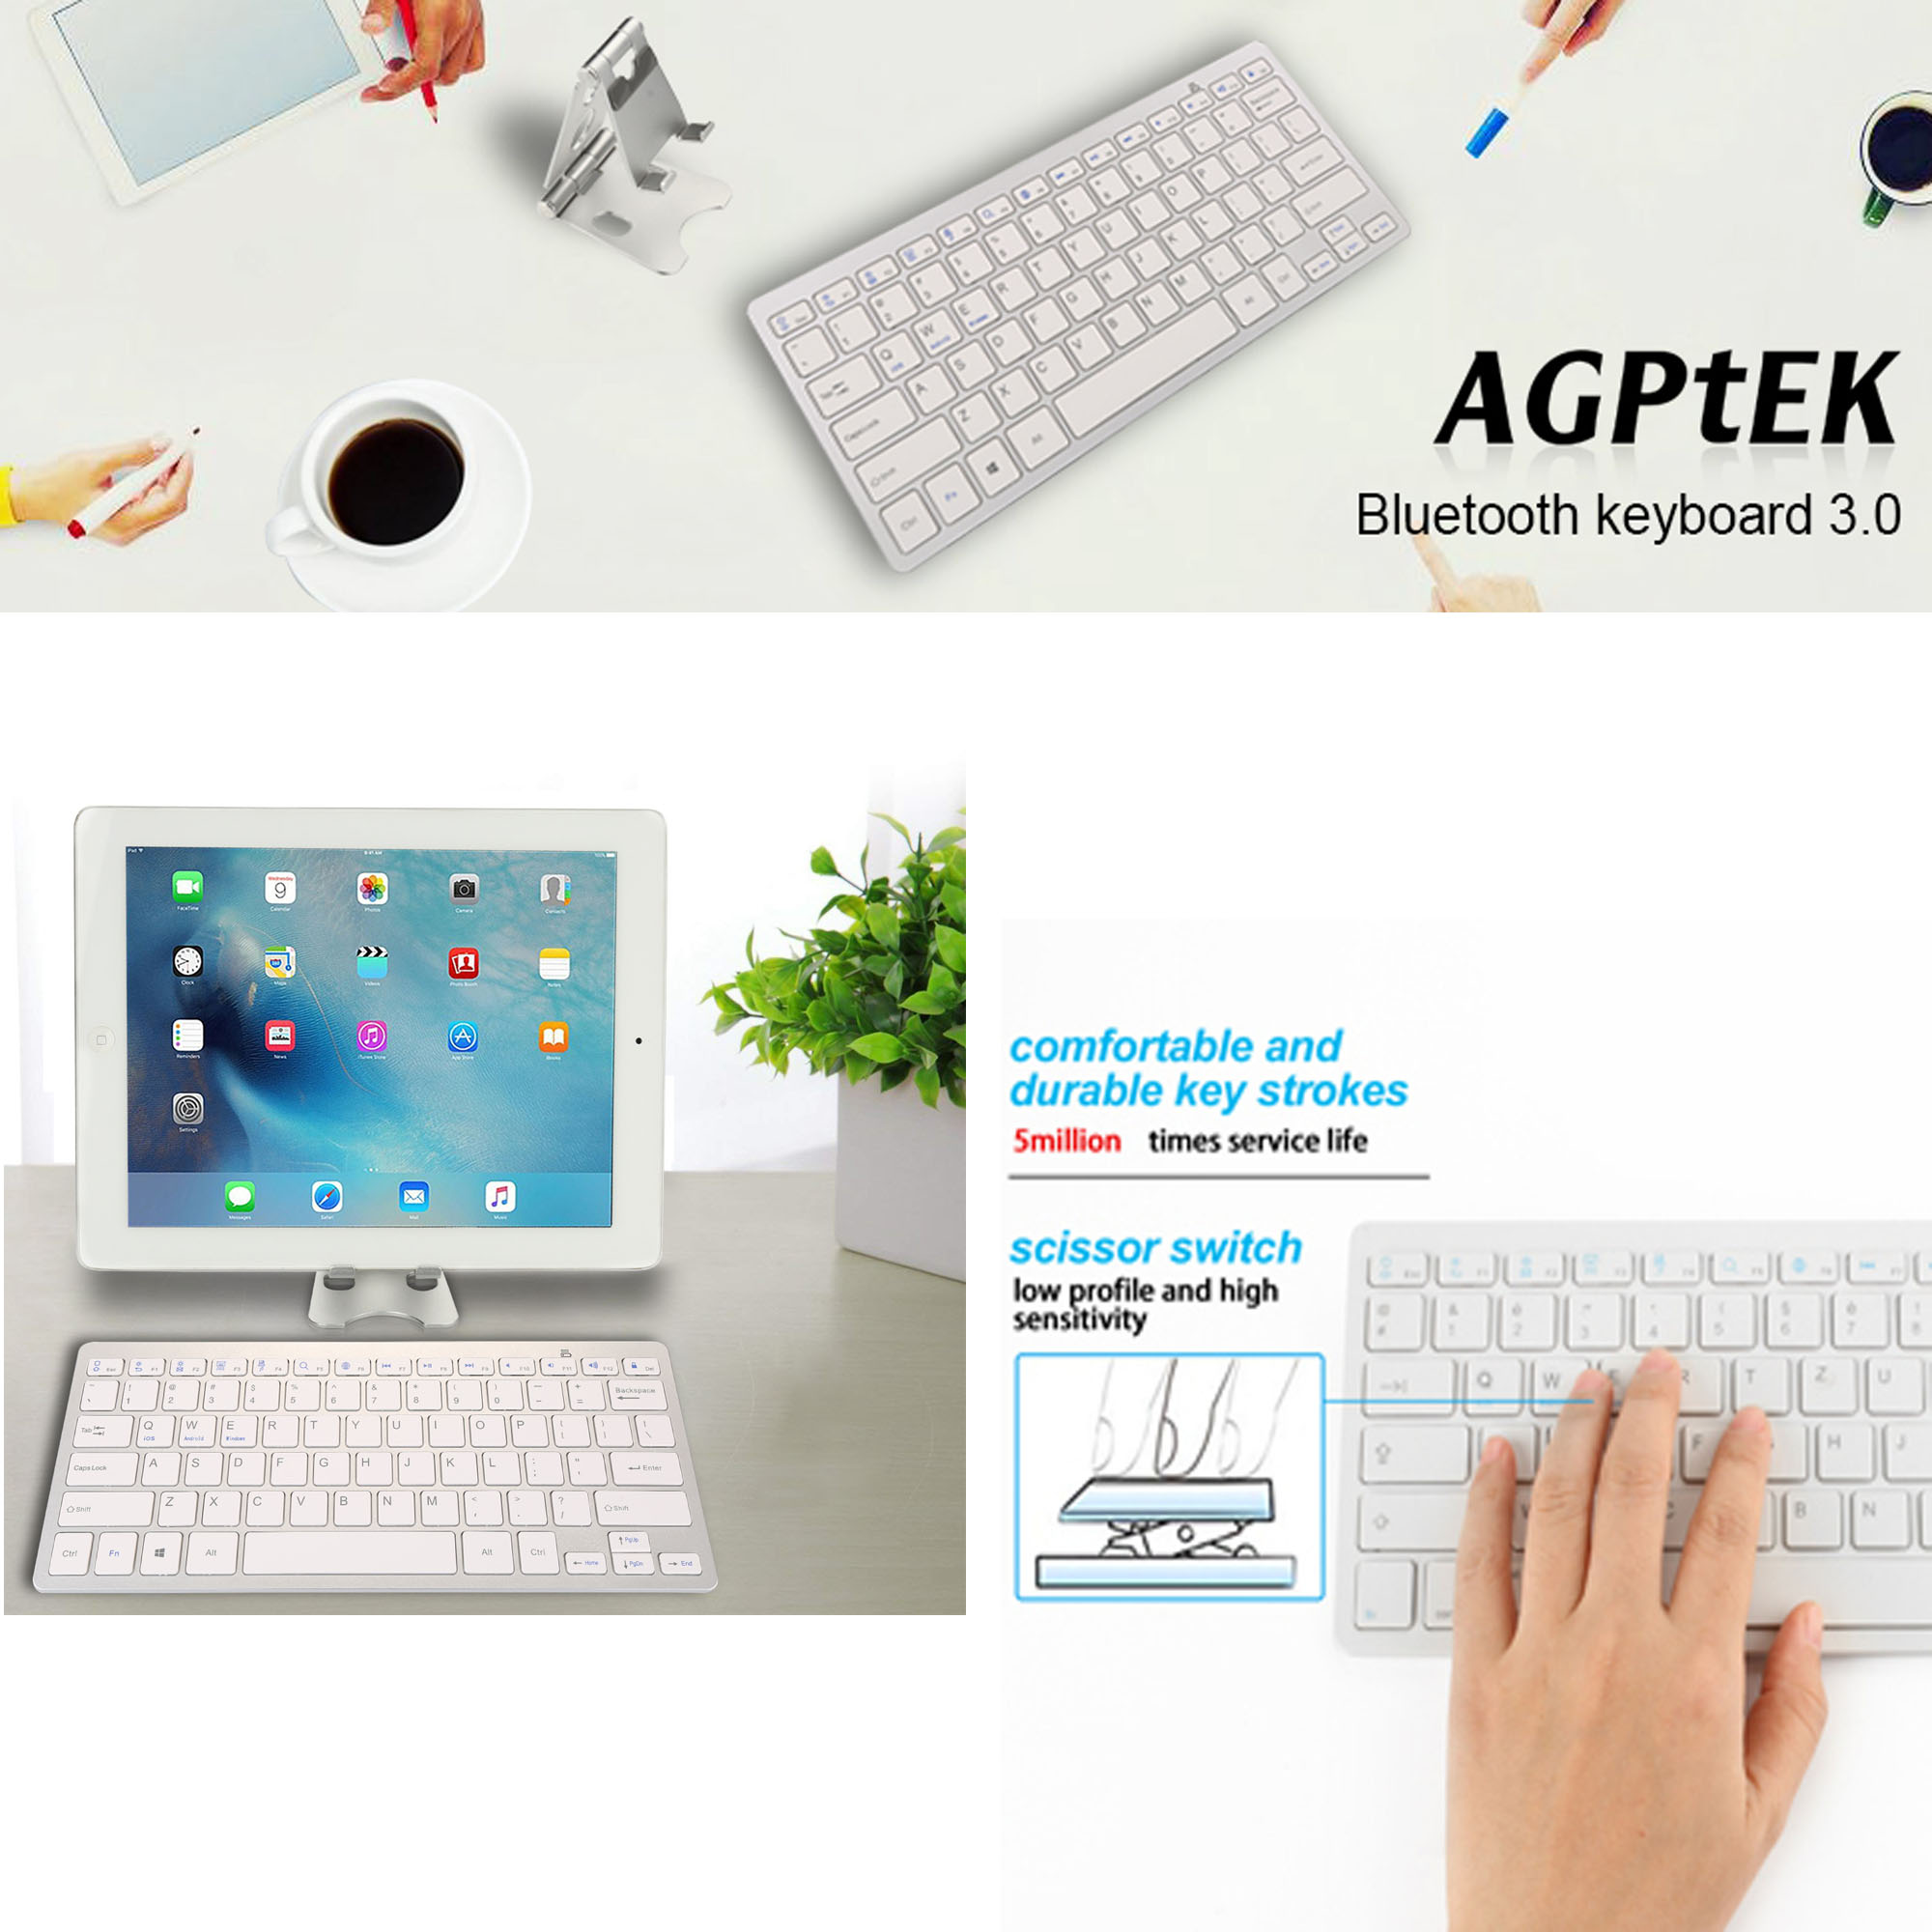 agptek keyboard software download